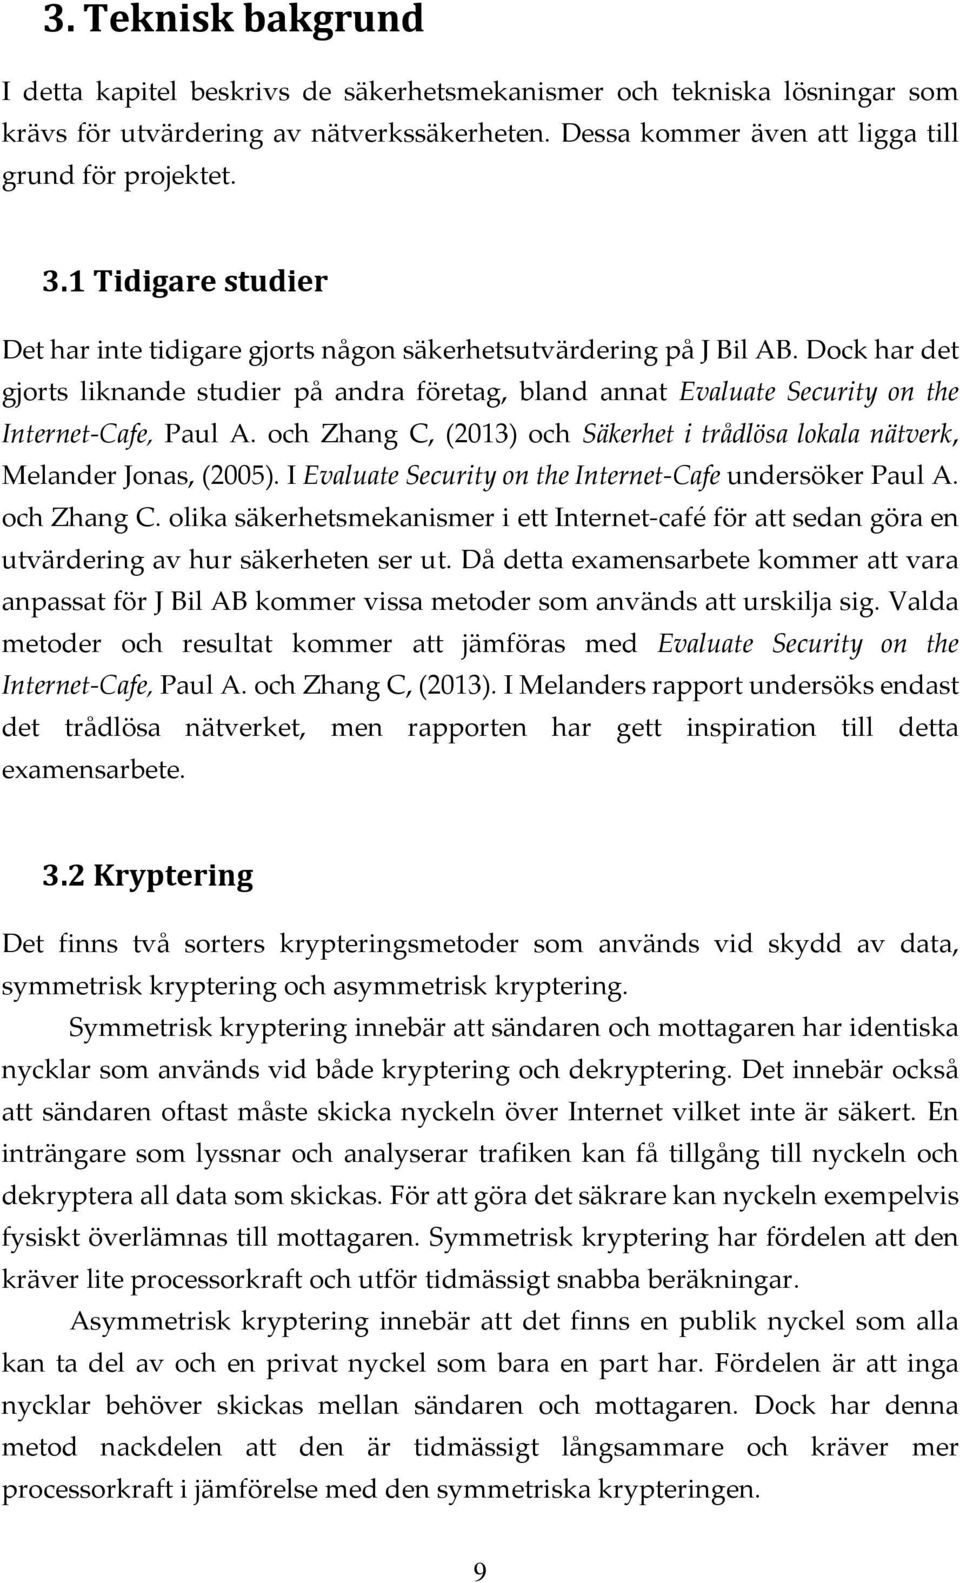 Dock har det gjorts liknande studier på andra företag, bland annat Evaluate Security on the Internet-Cafe, Paul A. och Zhang C, (2013) och Säkerhet i trådlösa lokala nätverk, Melander Jonas, (2005).